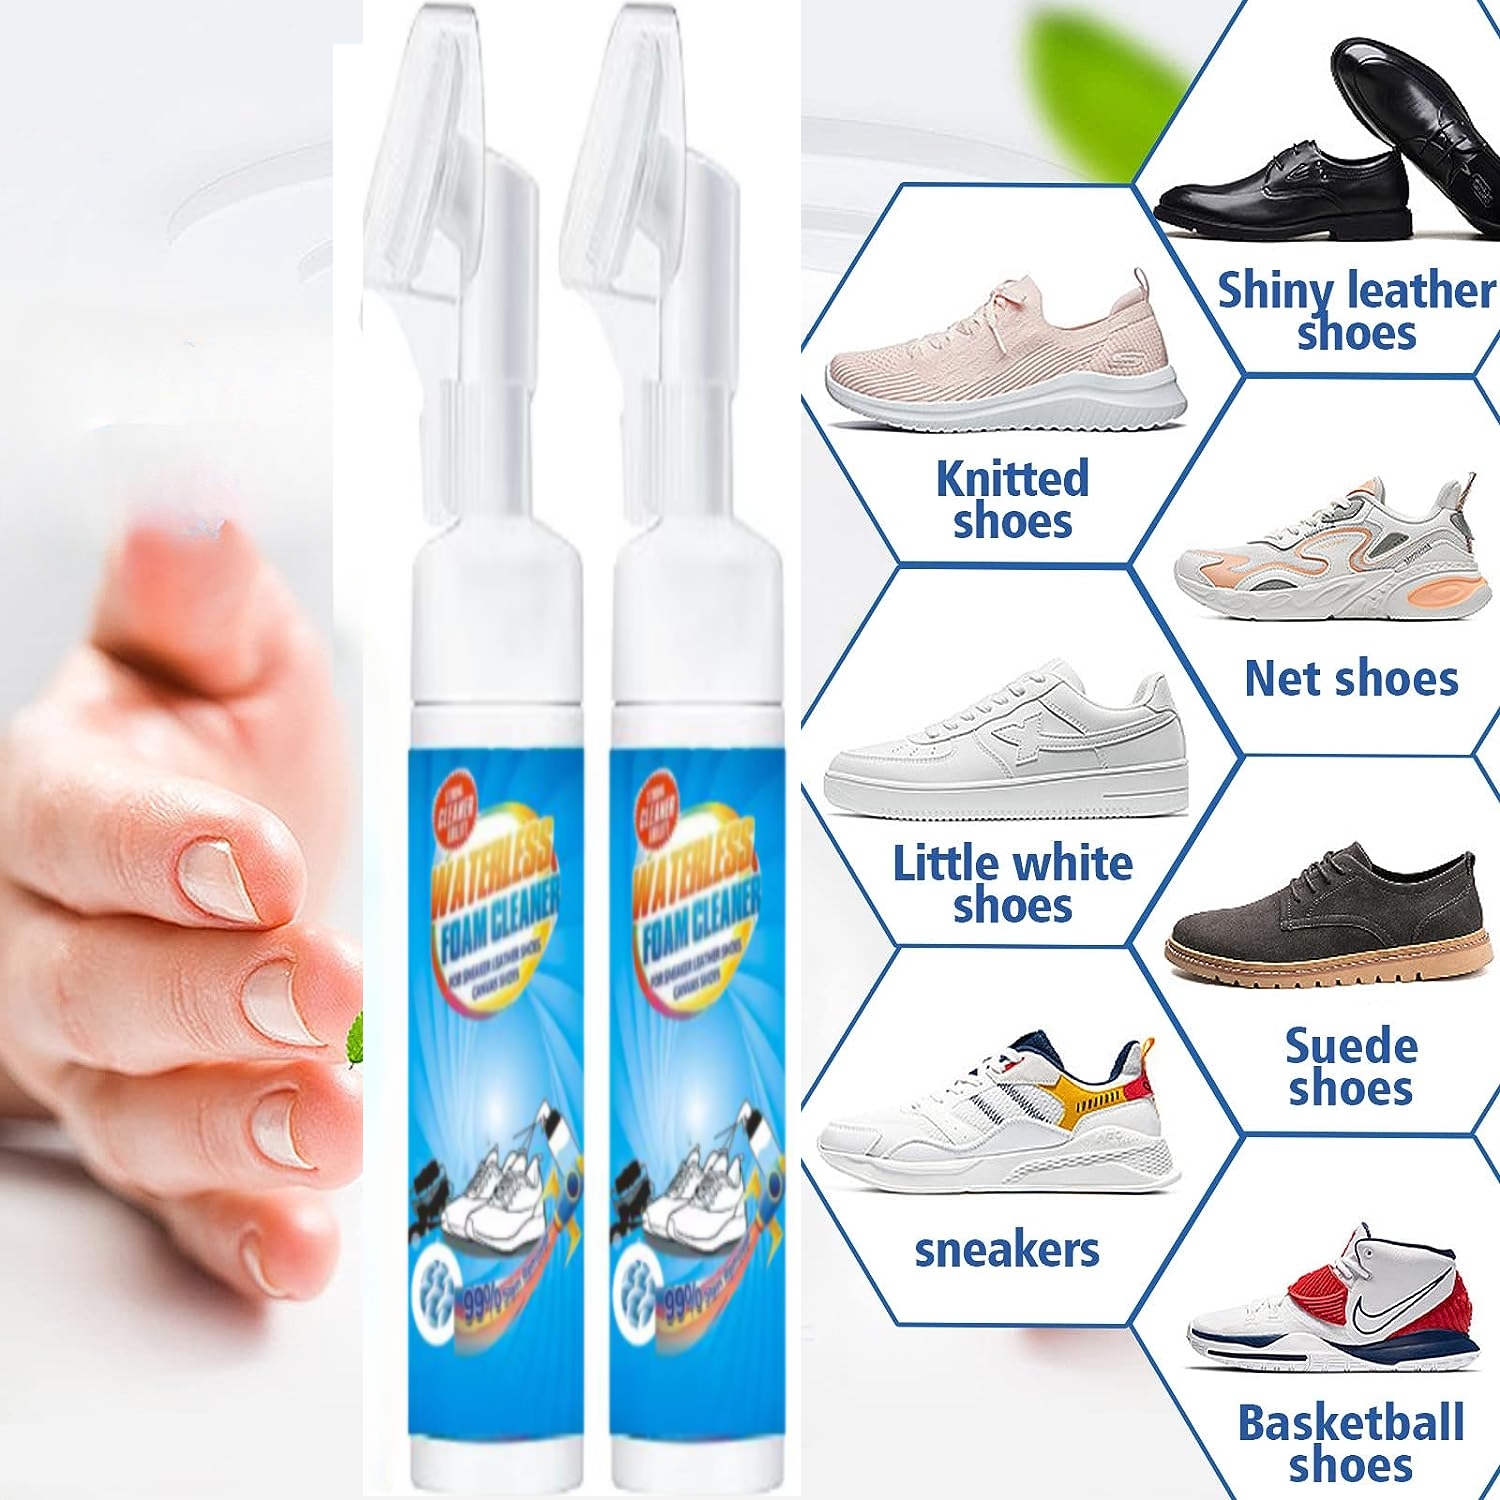 Shoe Foam Cleaner Shoe Whitener For Sneakers Sneaker Cleaner